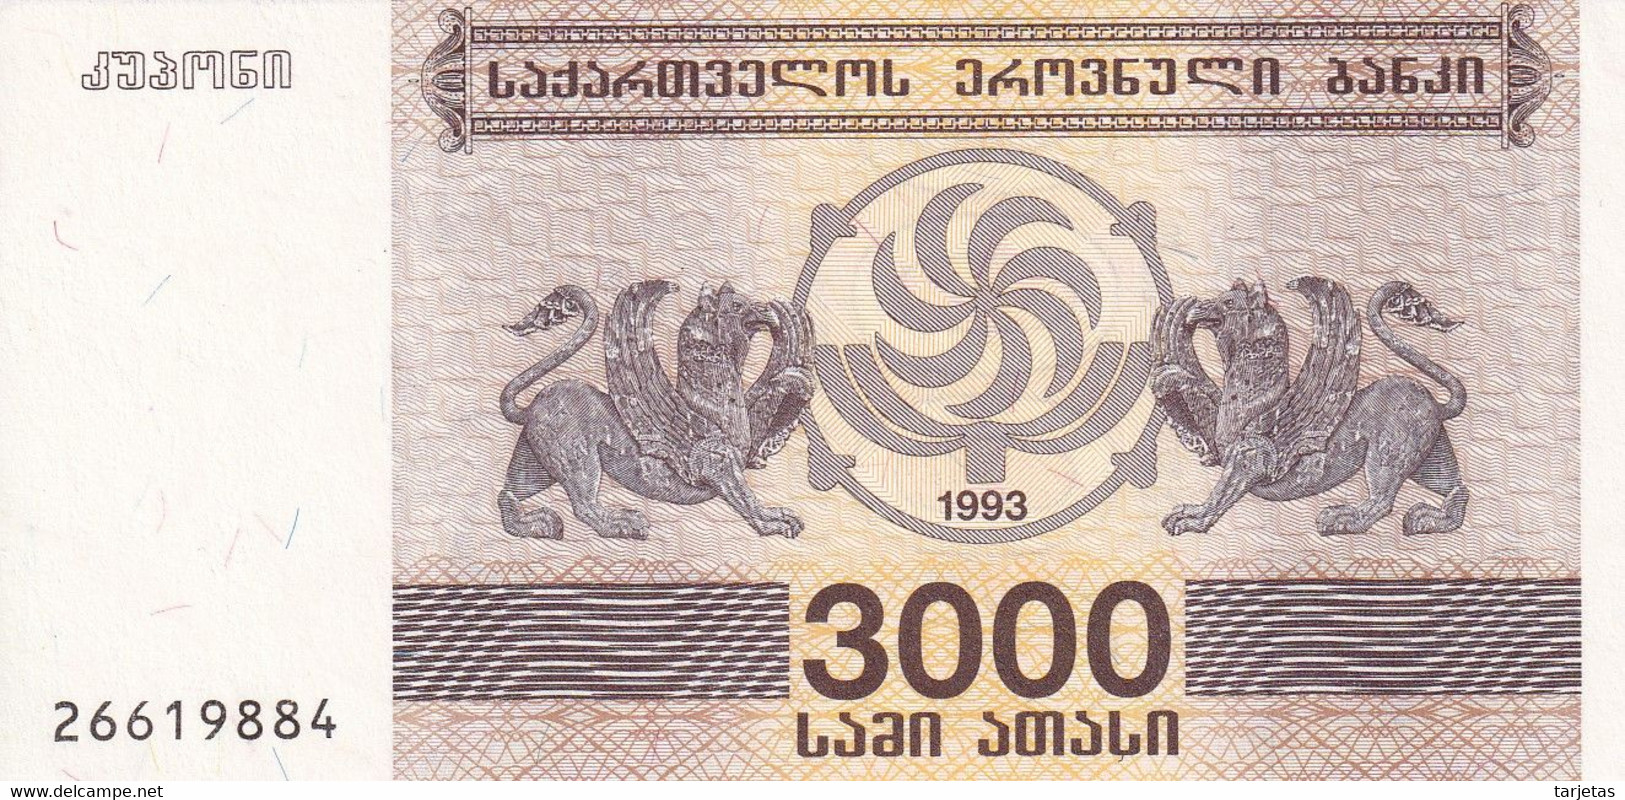 BILLETE DE GEORGIA DE 3000 LARIS DEL AÑO 1993 SIN CIRCULAR (UNC) (BANKNOTE) - Georgia